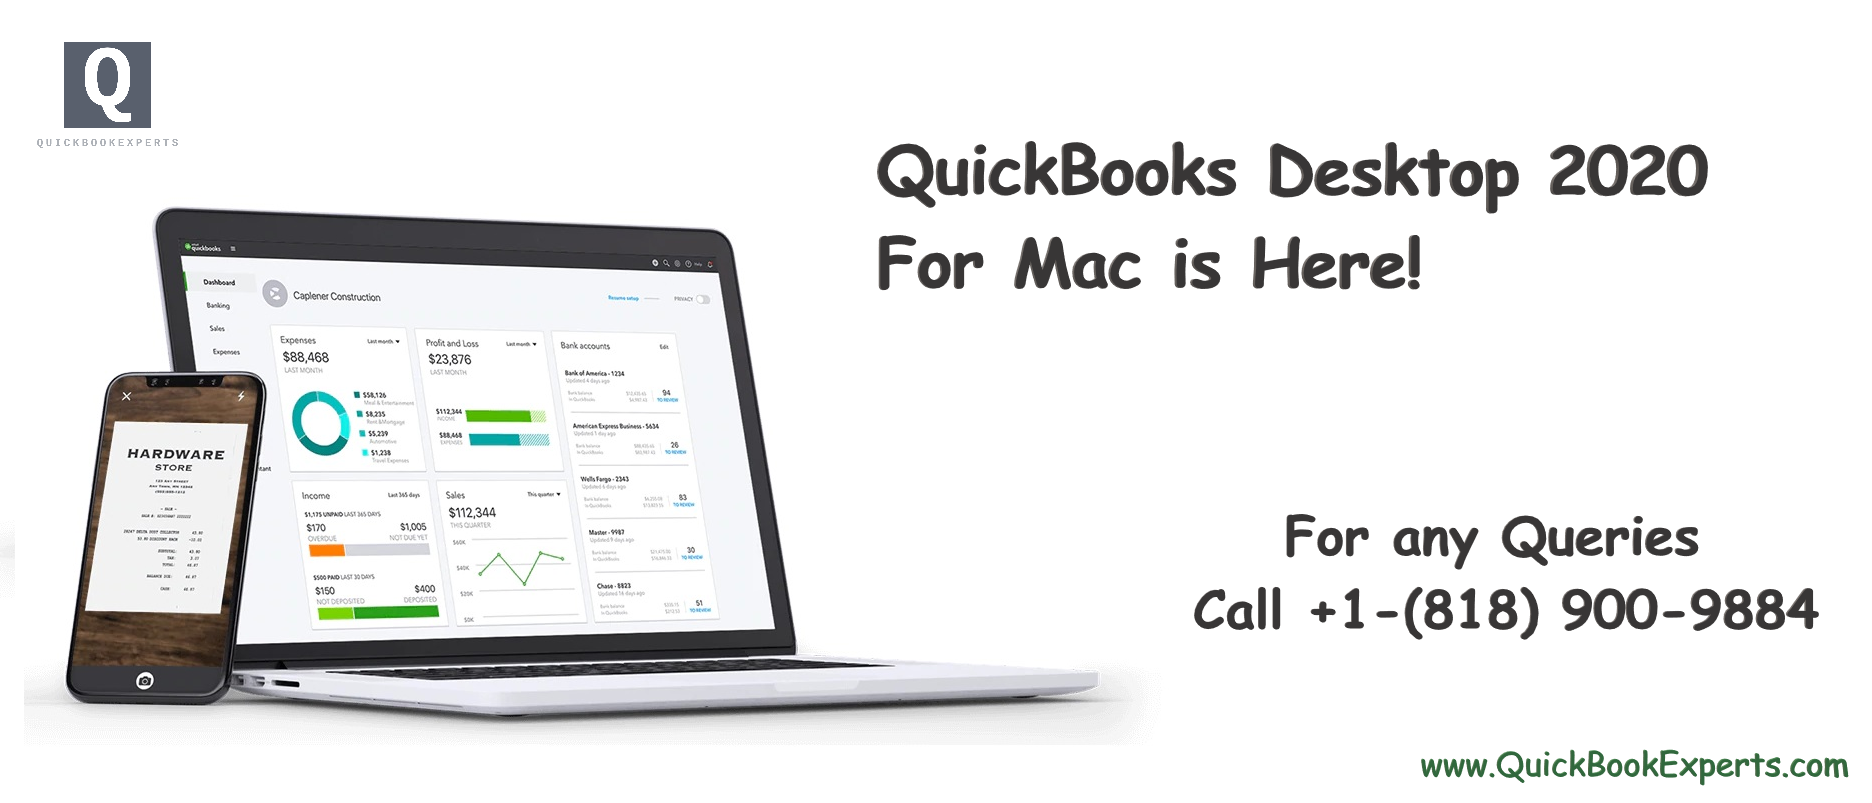 find ein in quickbooks for mac desktop